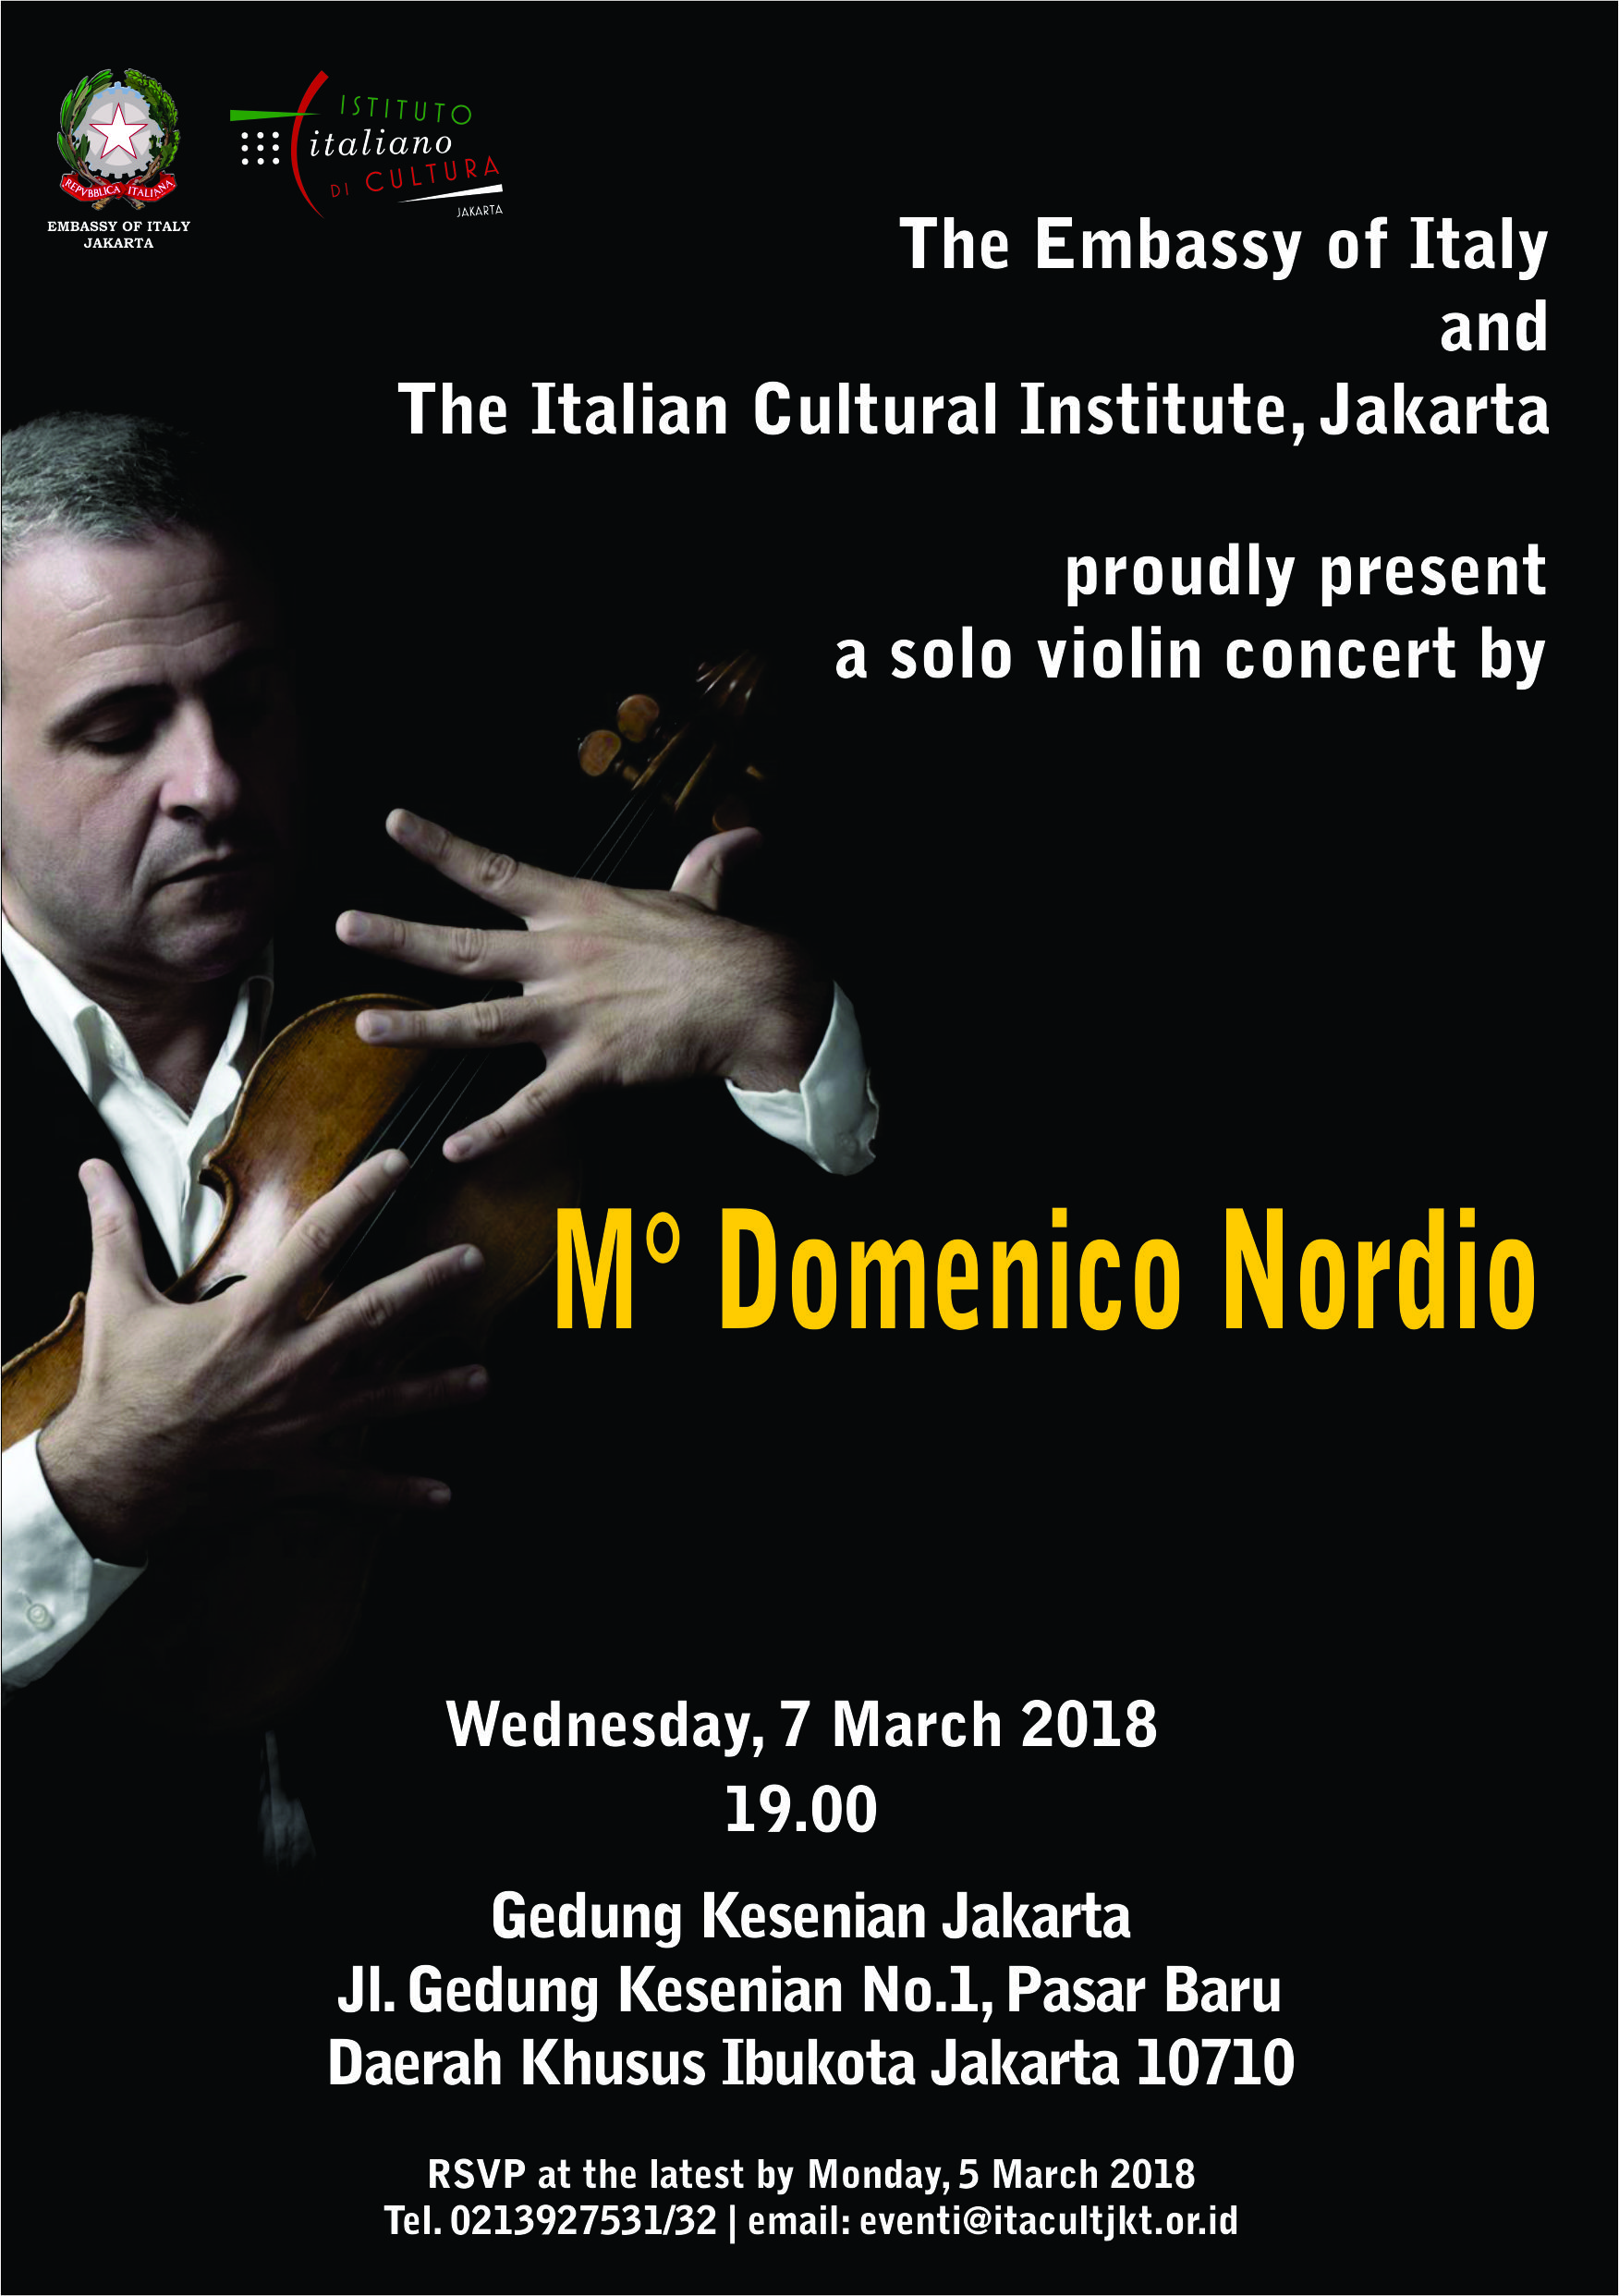 A Solo Violin Concert by Maestro Domenico Nordio